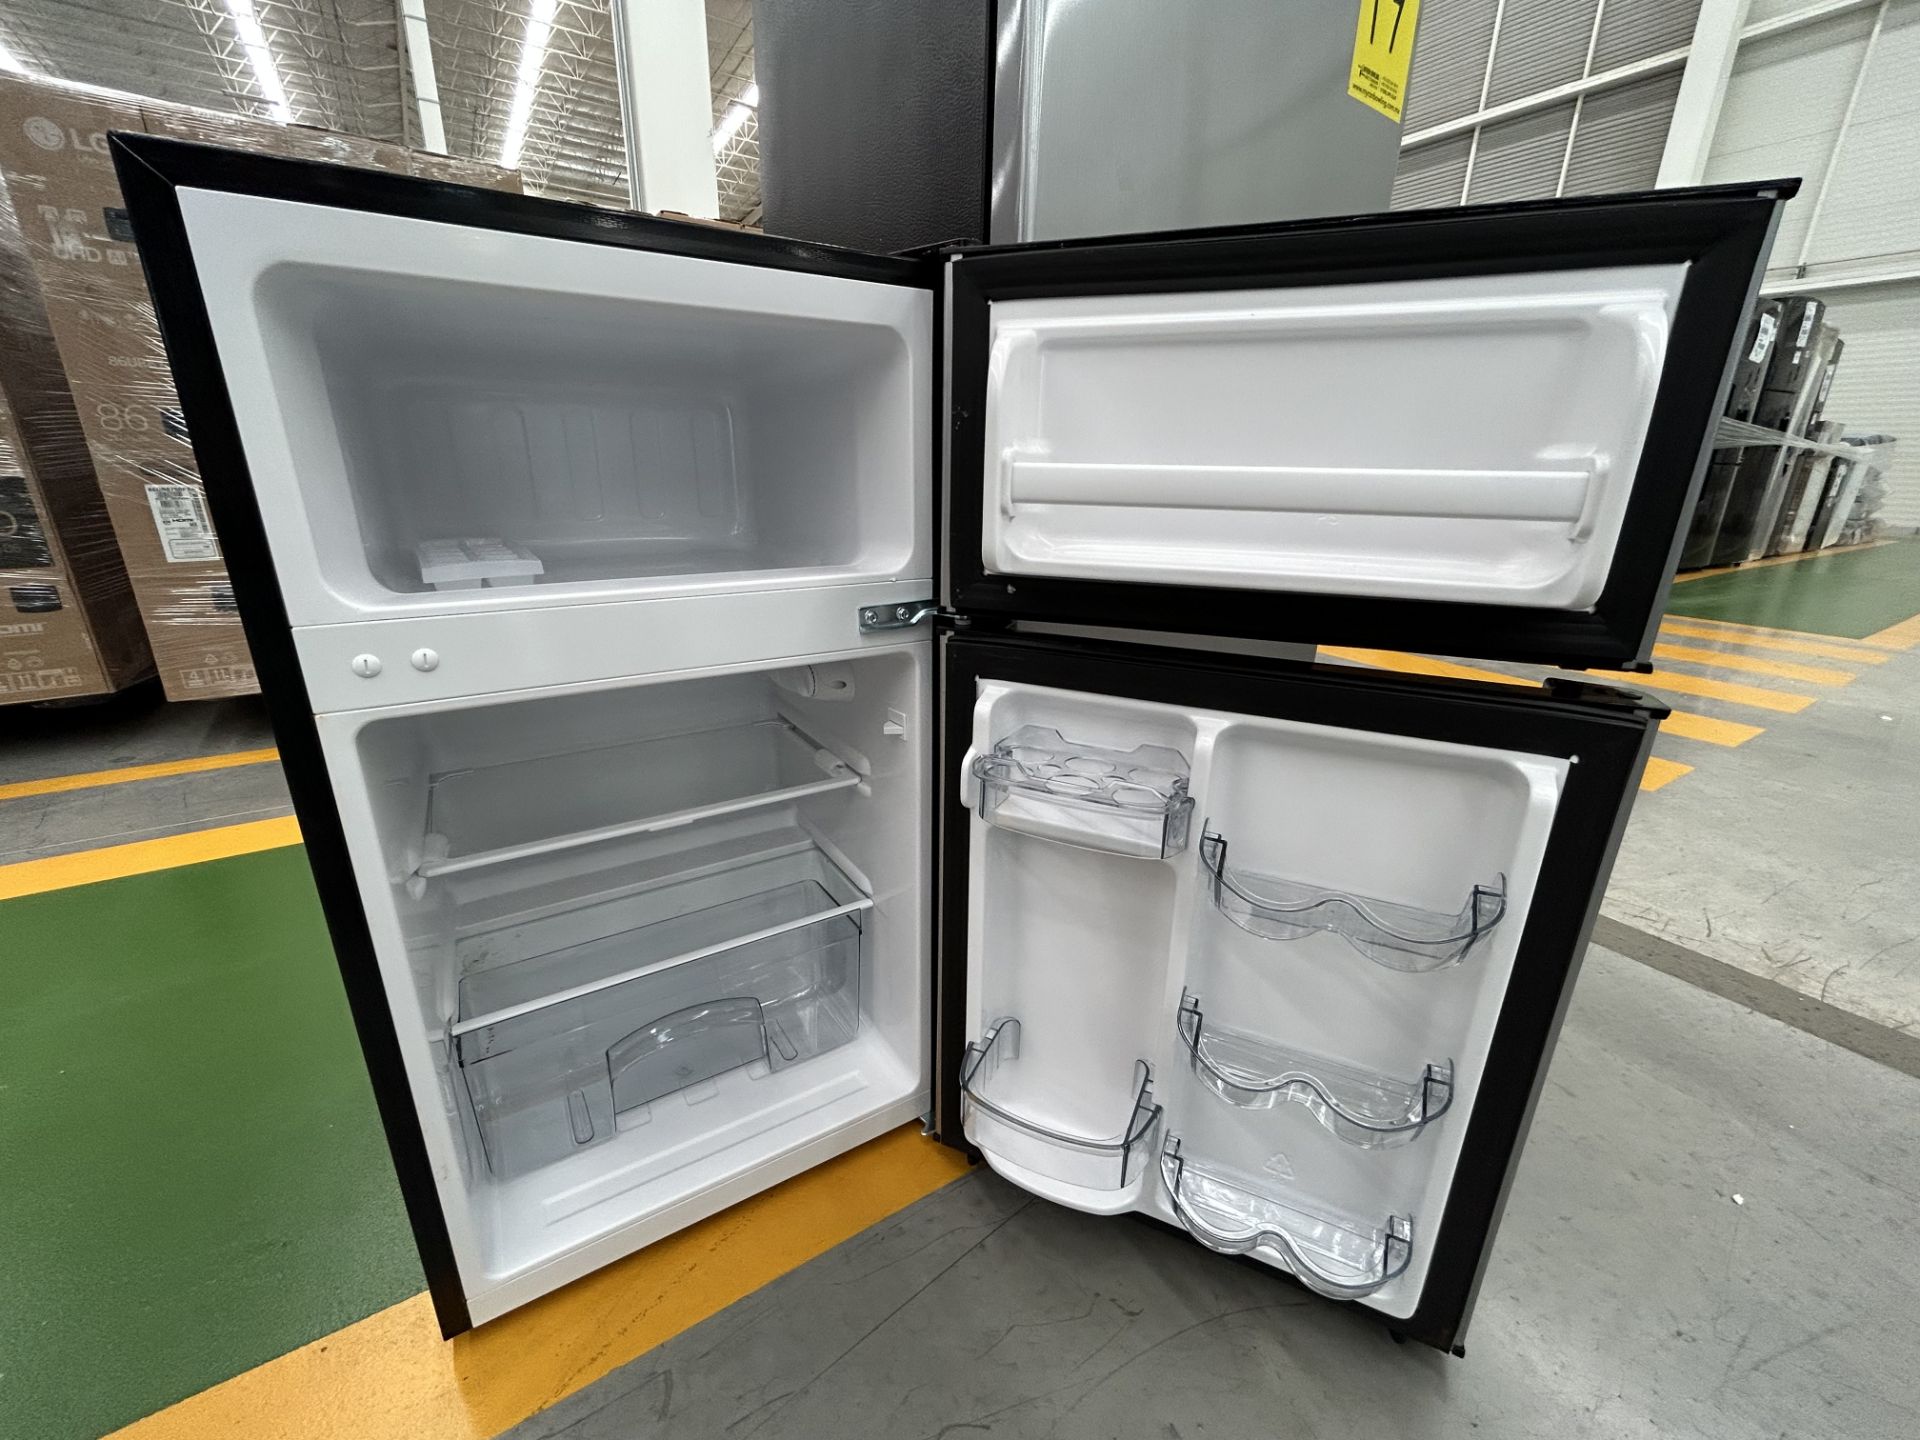 Lote de 2 refrigeradores contiene: 1 refrigerador Marca GALANZ, Modelo GLR55TS1, Serie ND, Color GR - Image 5 of 6